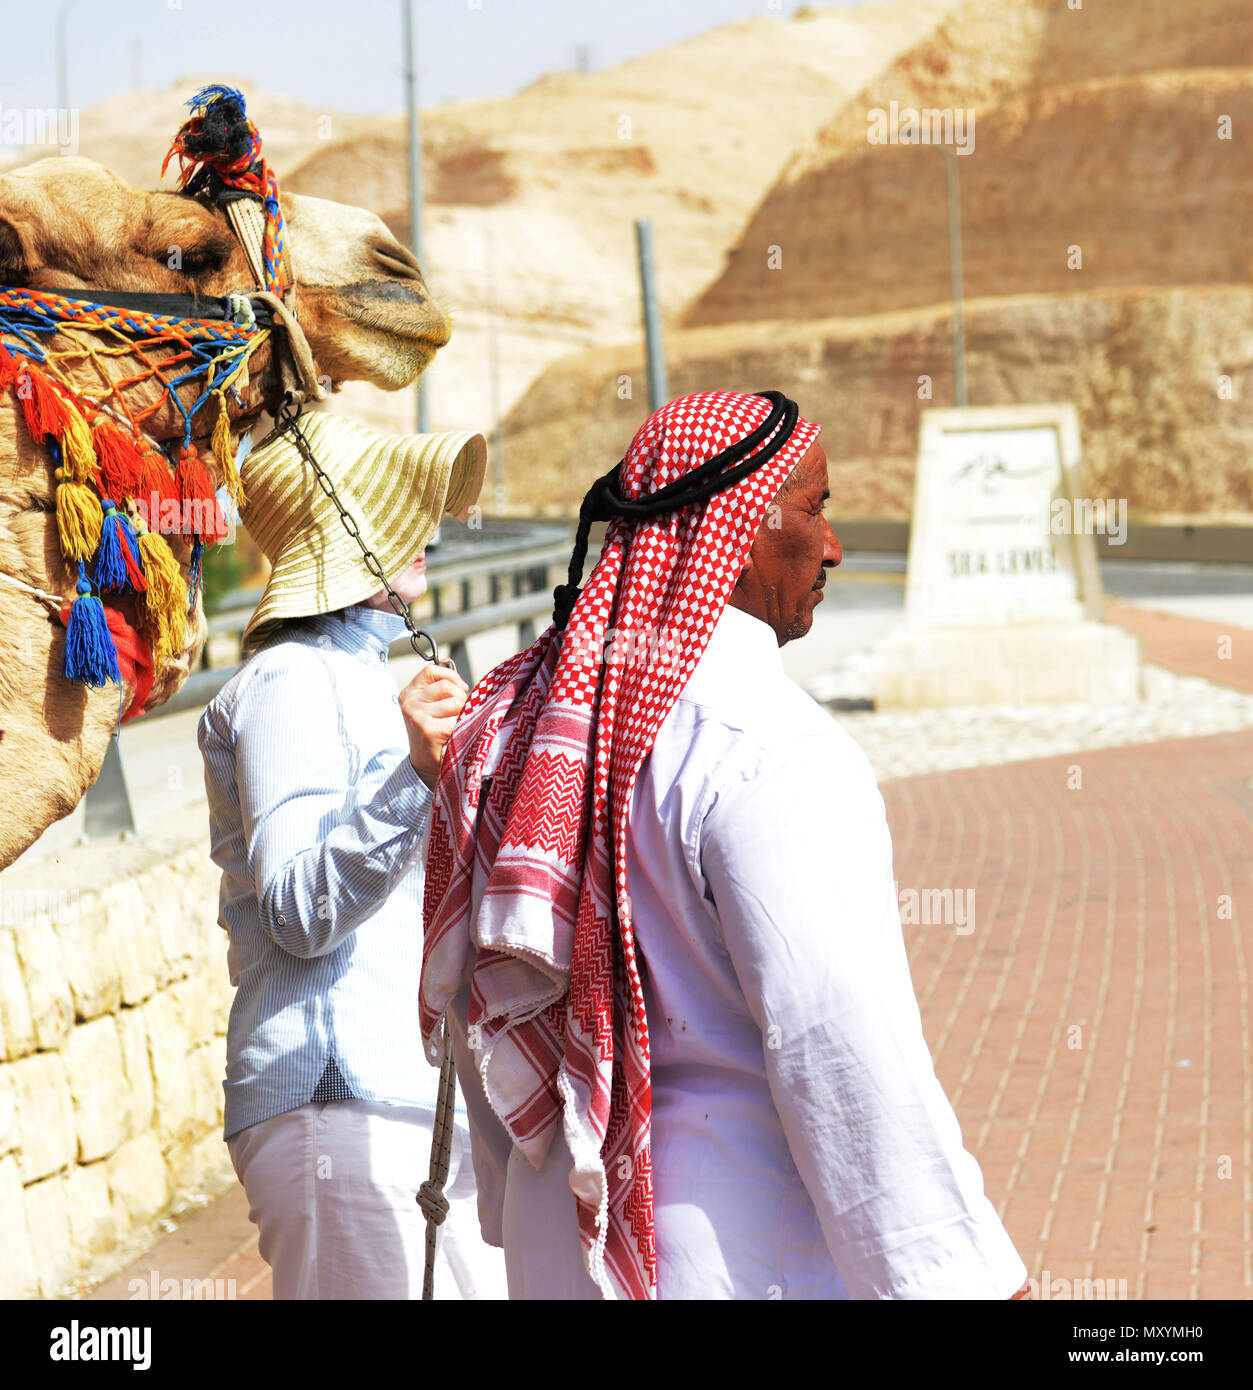 Un touriste posant pour une photo avec un Bédouin l'homme et son chameau au niveau de la mer sur la route menant à la mer Morte en Israël. Banque D'Images